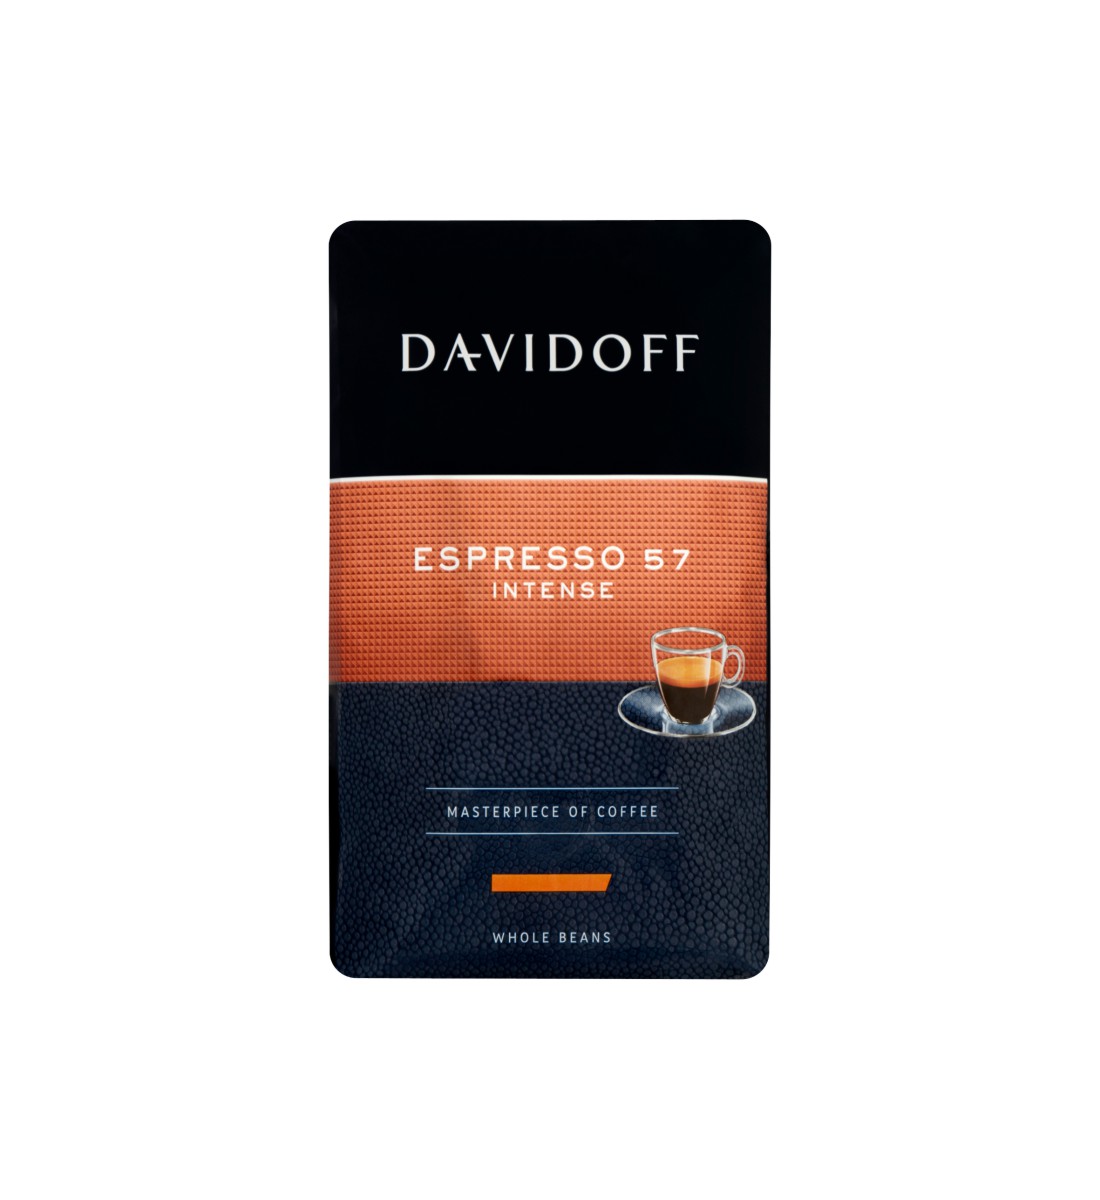 Davidoff Espresso 57 intense cafea boabe 500 g